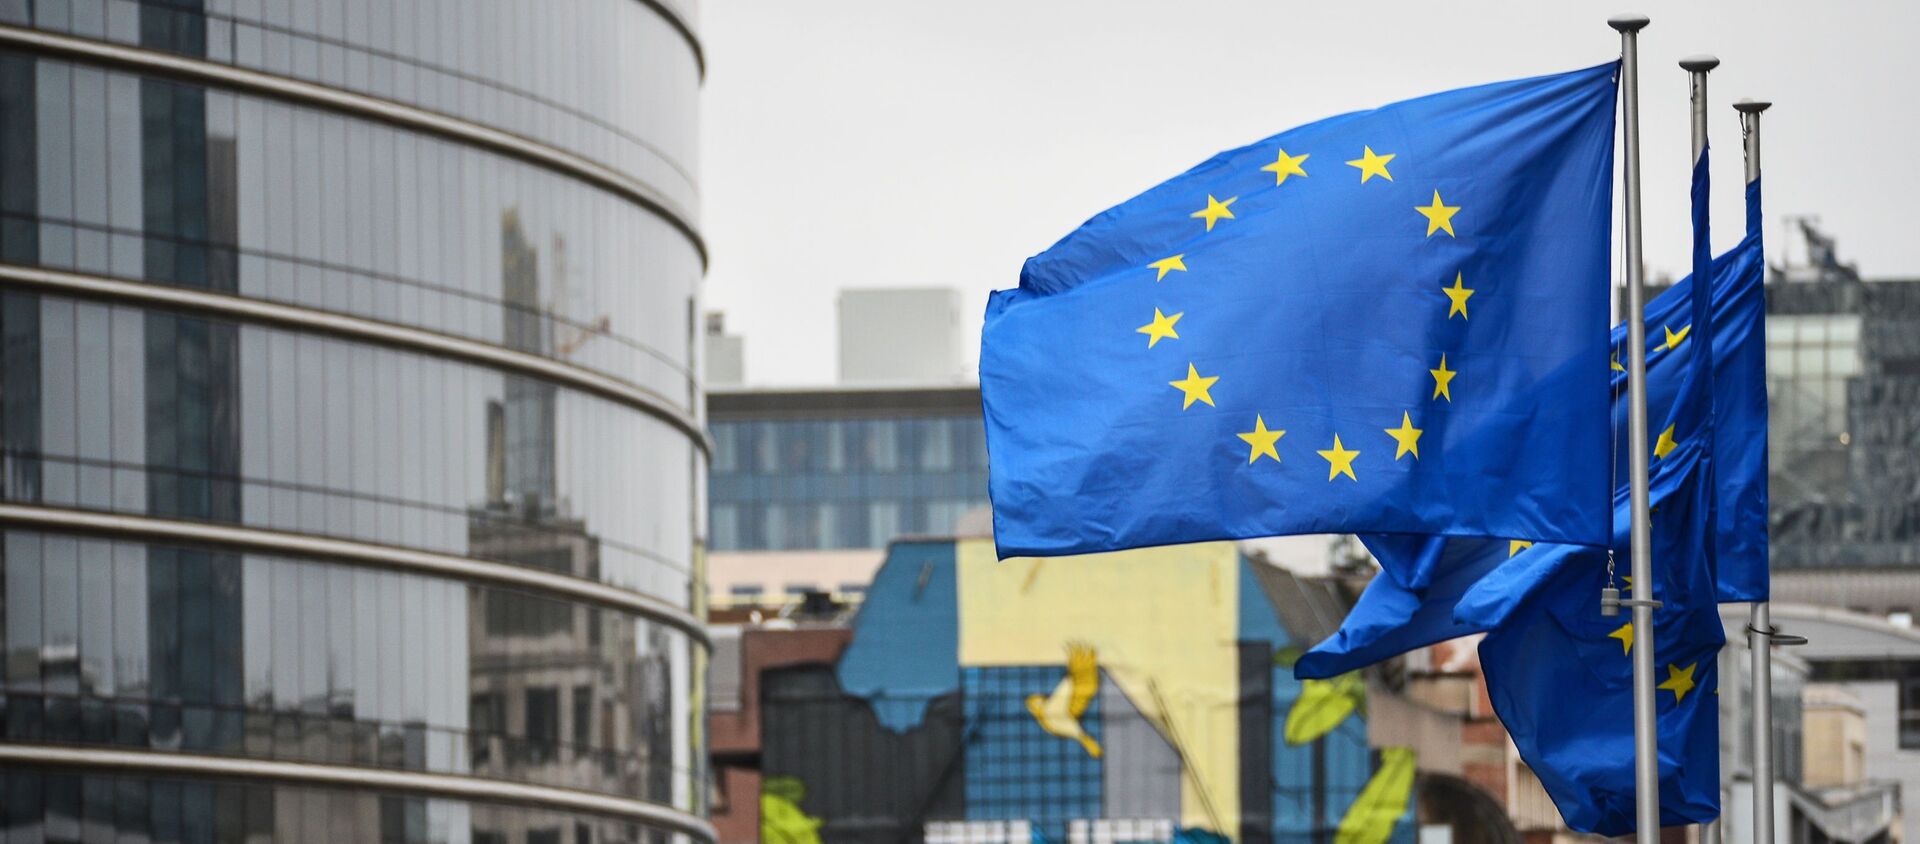 Флаги с символикой Евросоюза в Брюсселе, архивное фото - Sputnik Lietuva, 1920, 04.05.2021